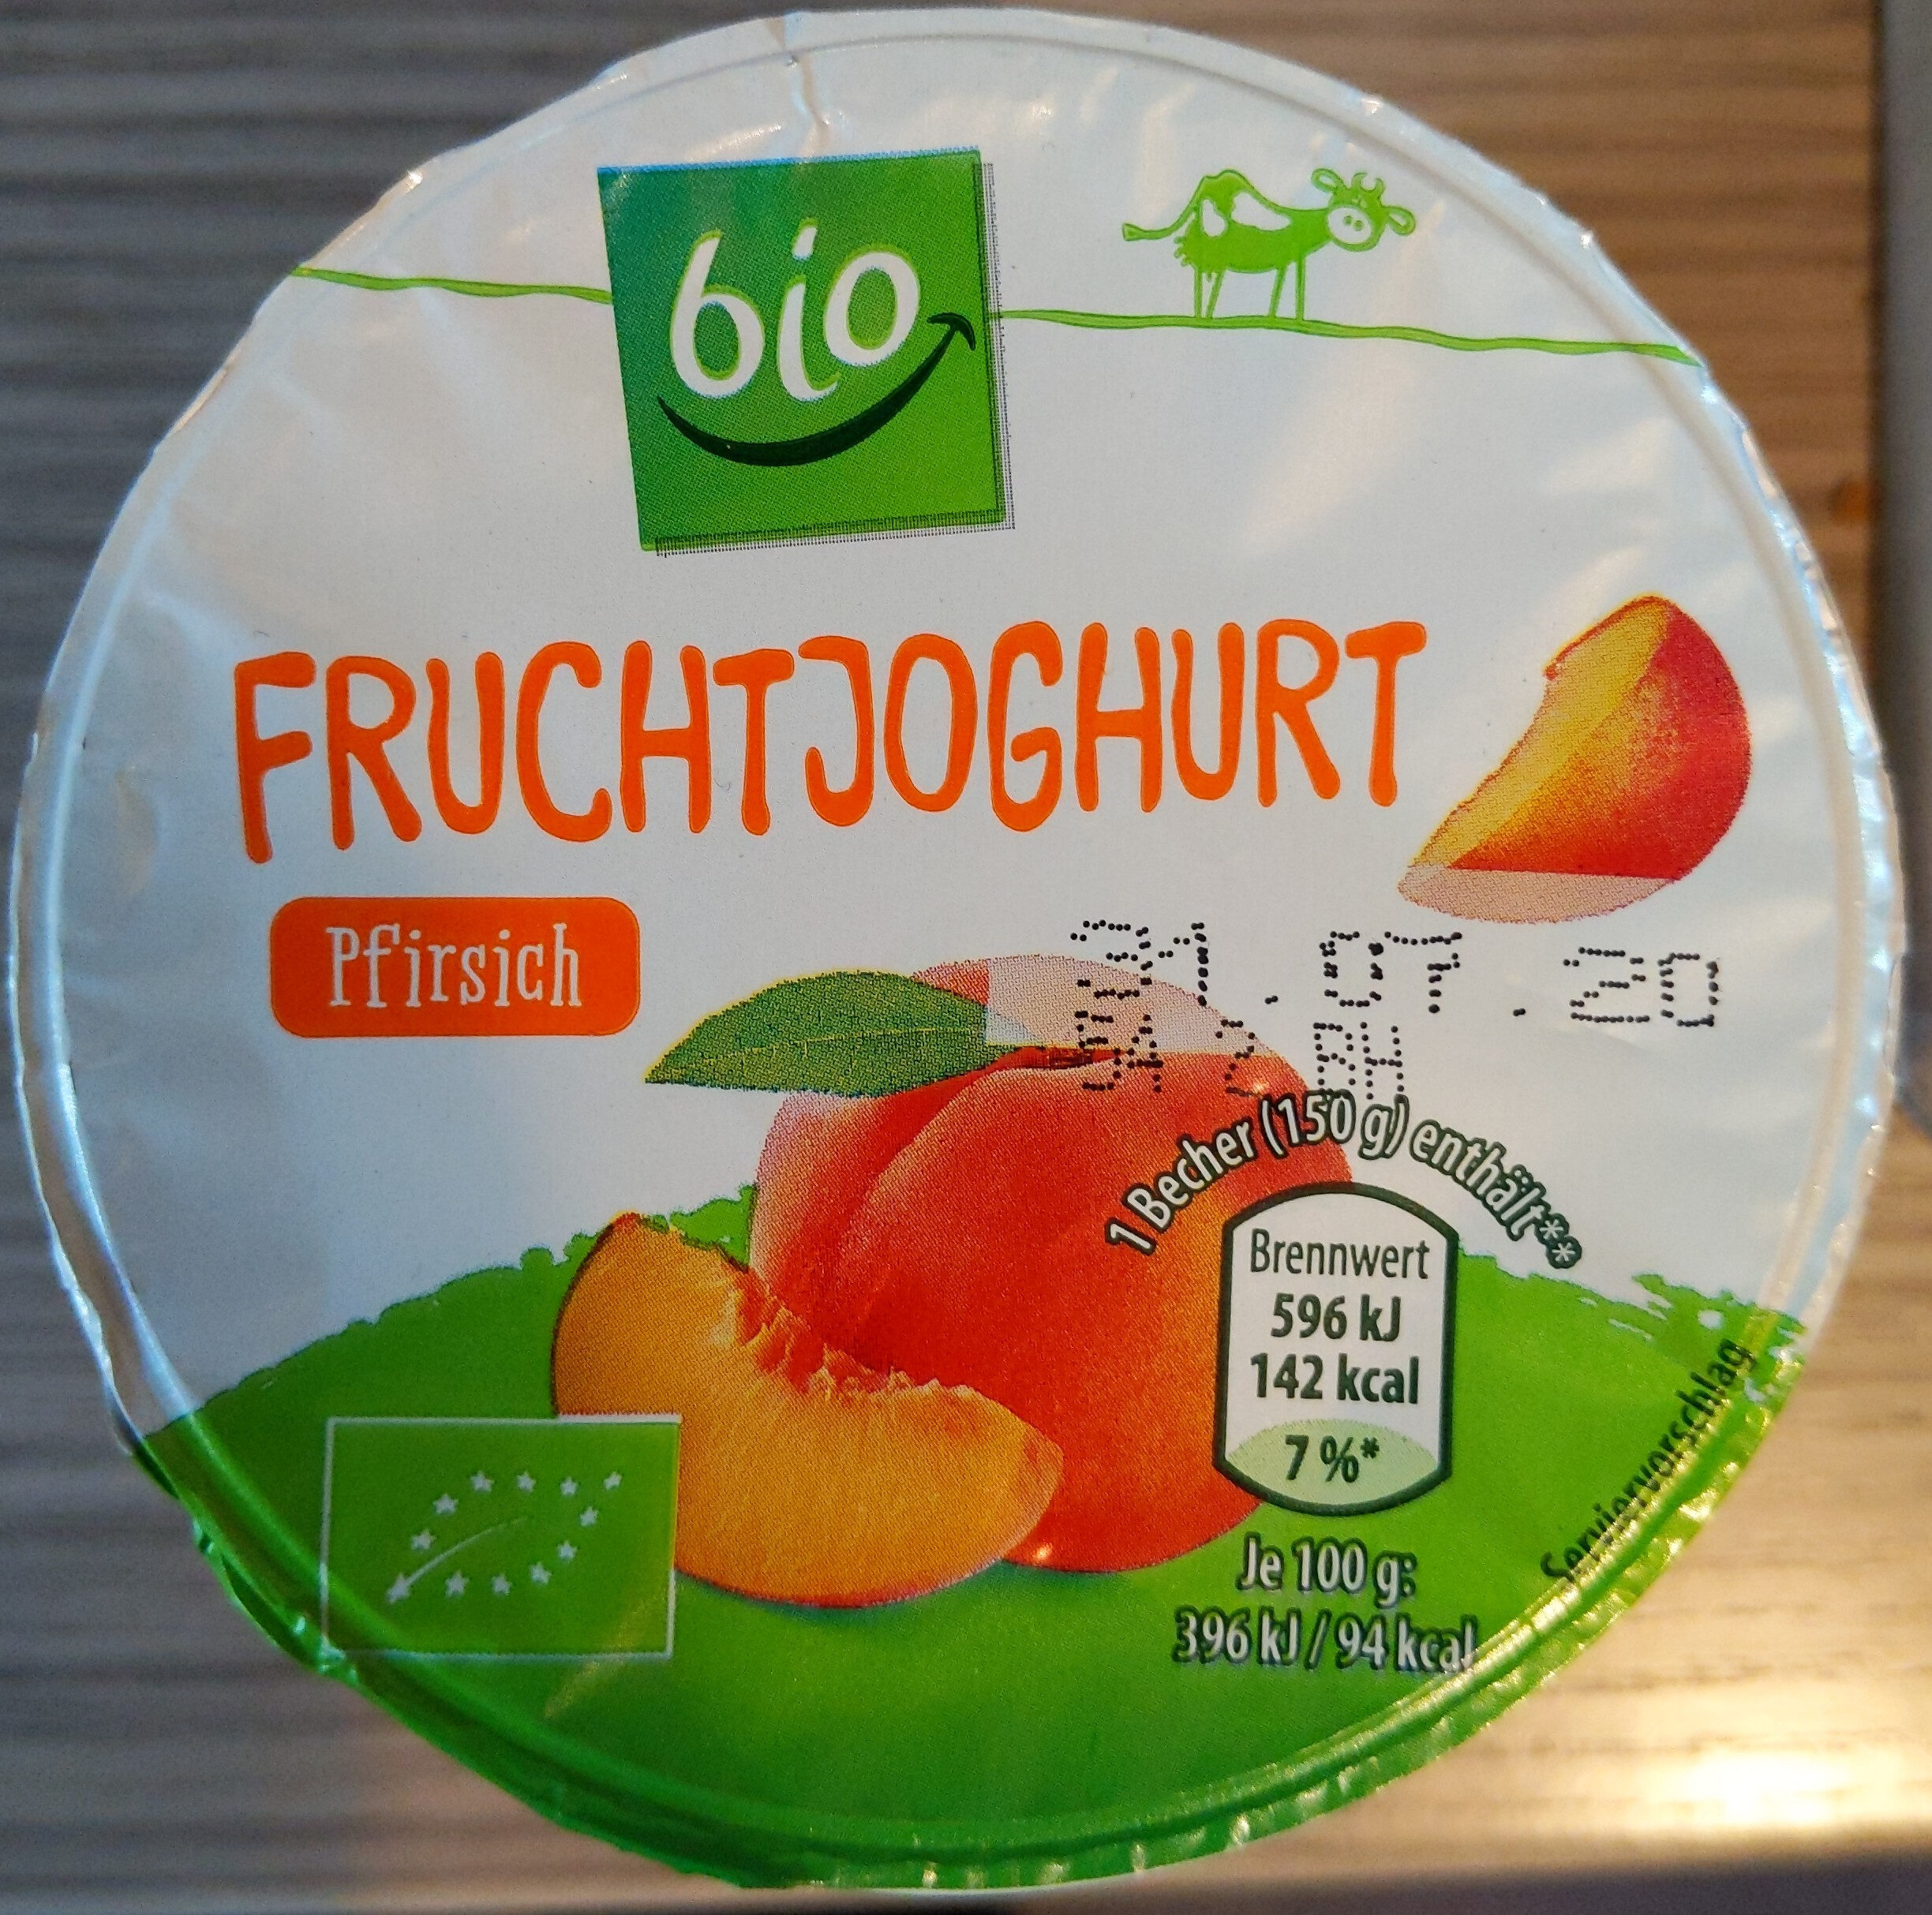 Fruchtjoghurt Pfirsich - Product - de